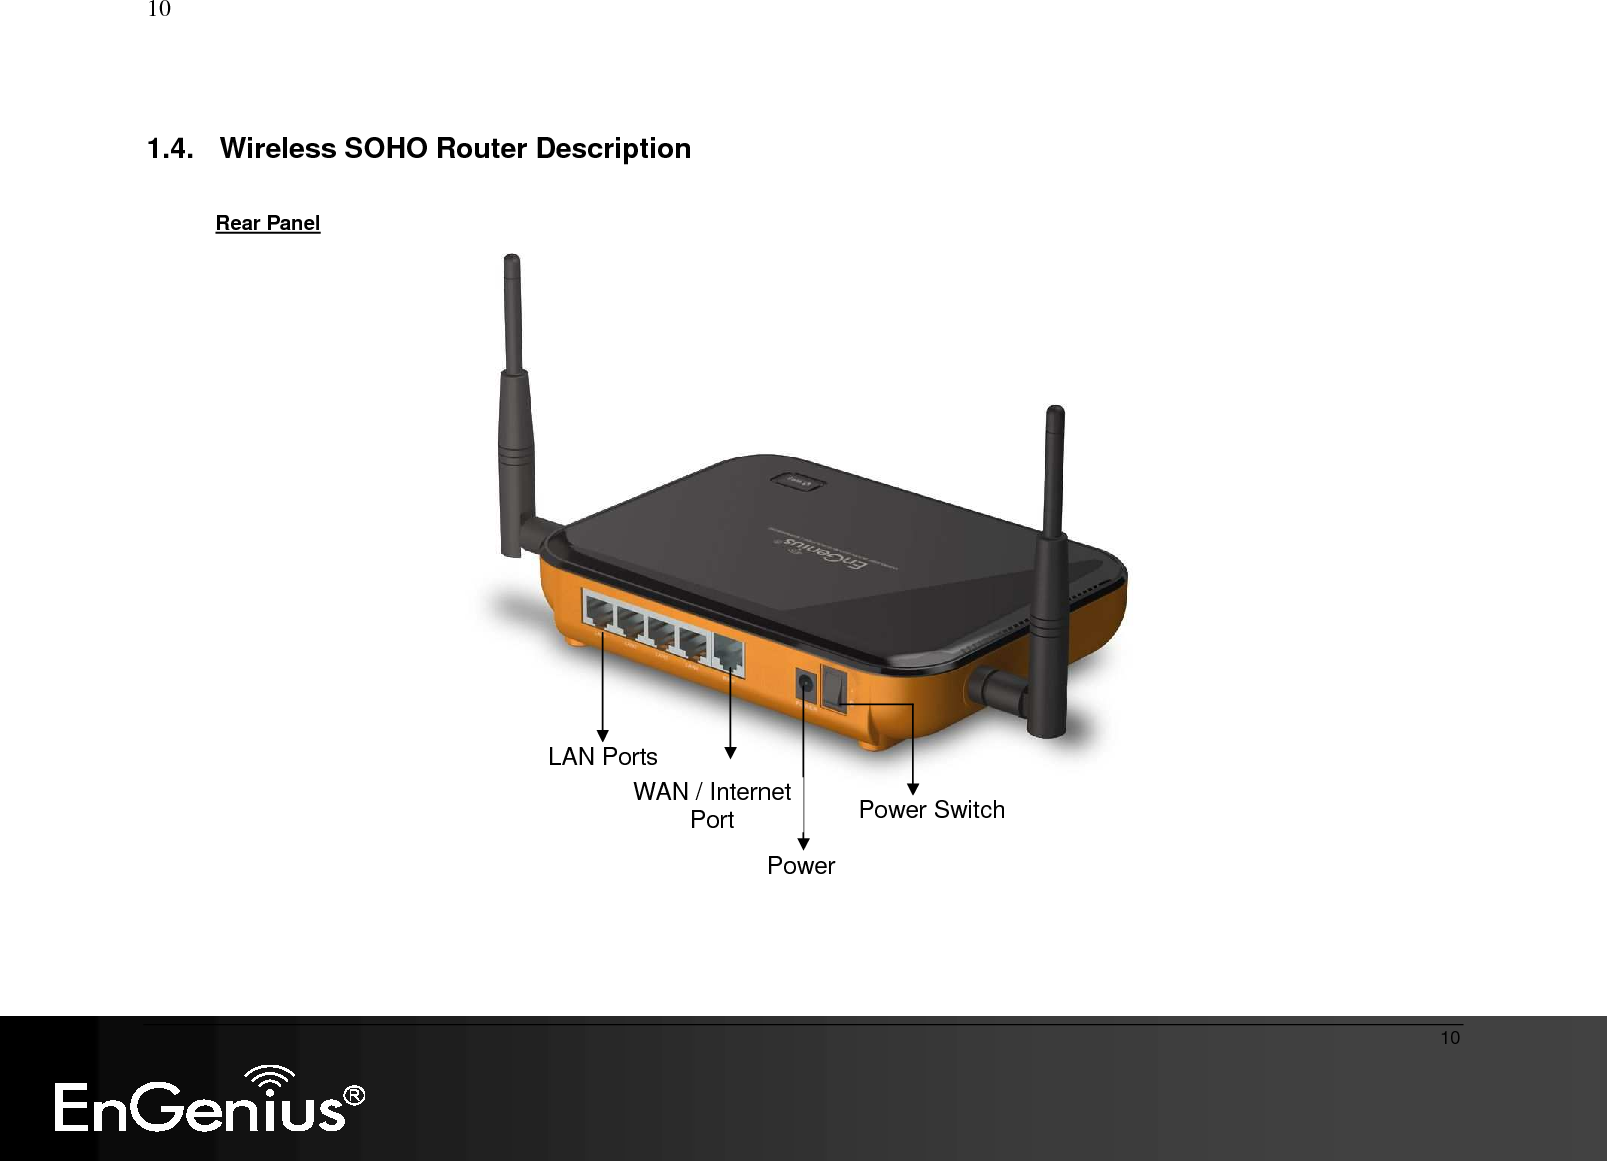   10  10  1.4.  Wireless SOHO Router Description        Rear Panel Power Switch LAN Ports WAN / Internet Port Power 